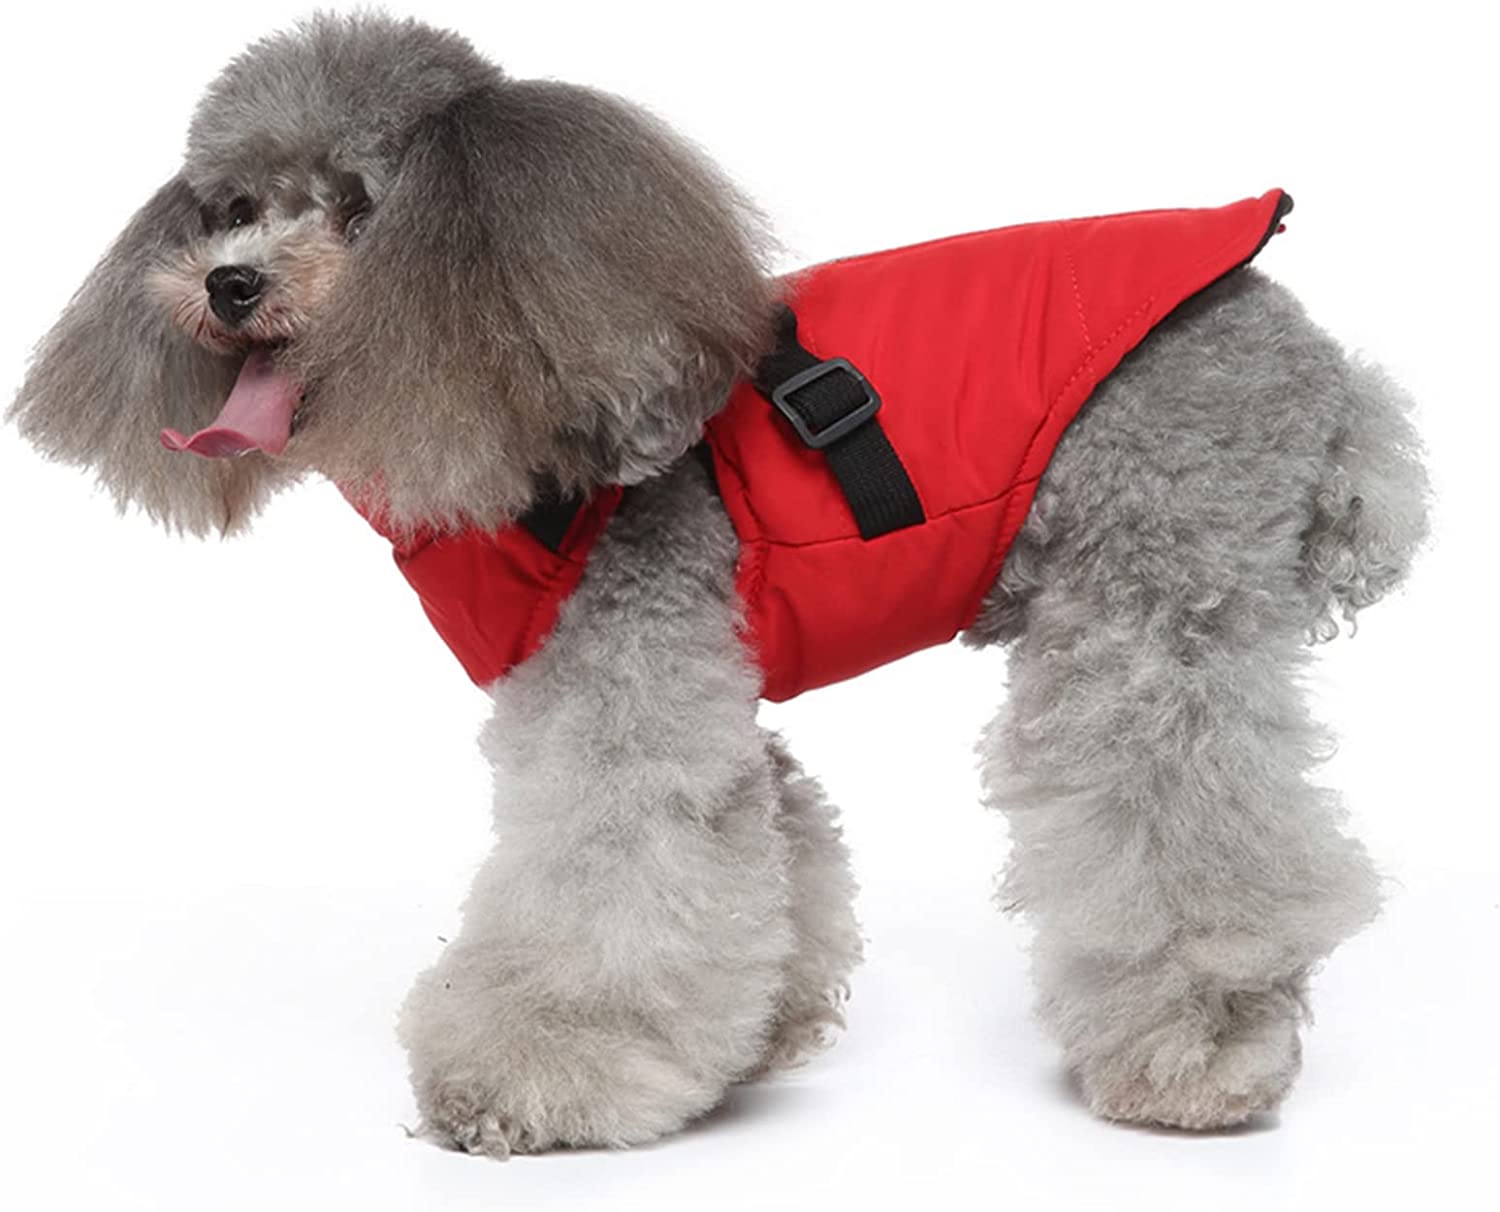    جنس: این کت مهار سگ از پارچه پلی استر، نرم، راحت، مواد با کیفیت بالا و سازگار با پوست ساخته شده است